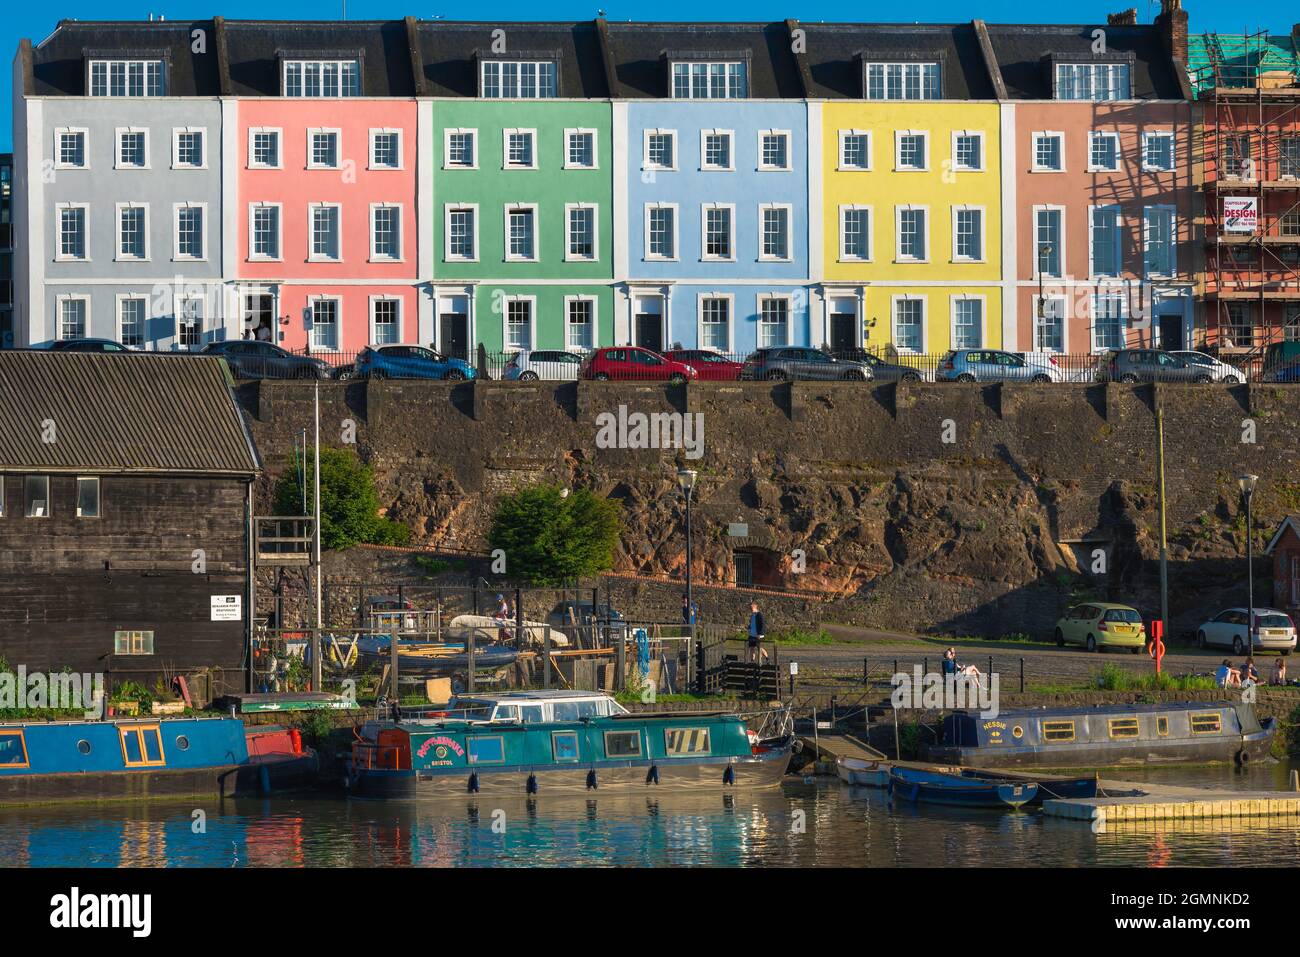 Bristol casa, vista di case colorate a schiera in Redcliffe Parade situato sopra il fiume Avon nel centro di Bristol, Inghilterra Regno Unito Foto Stock